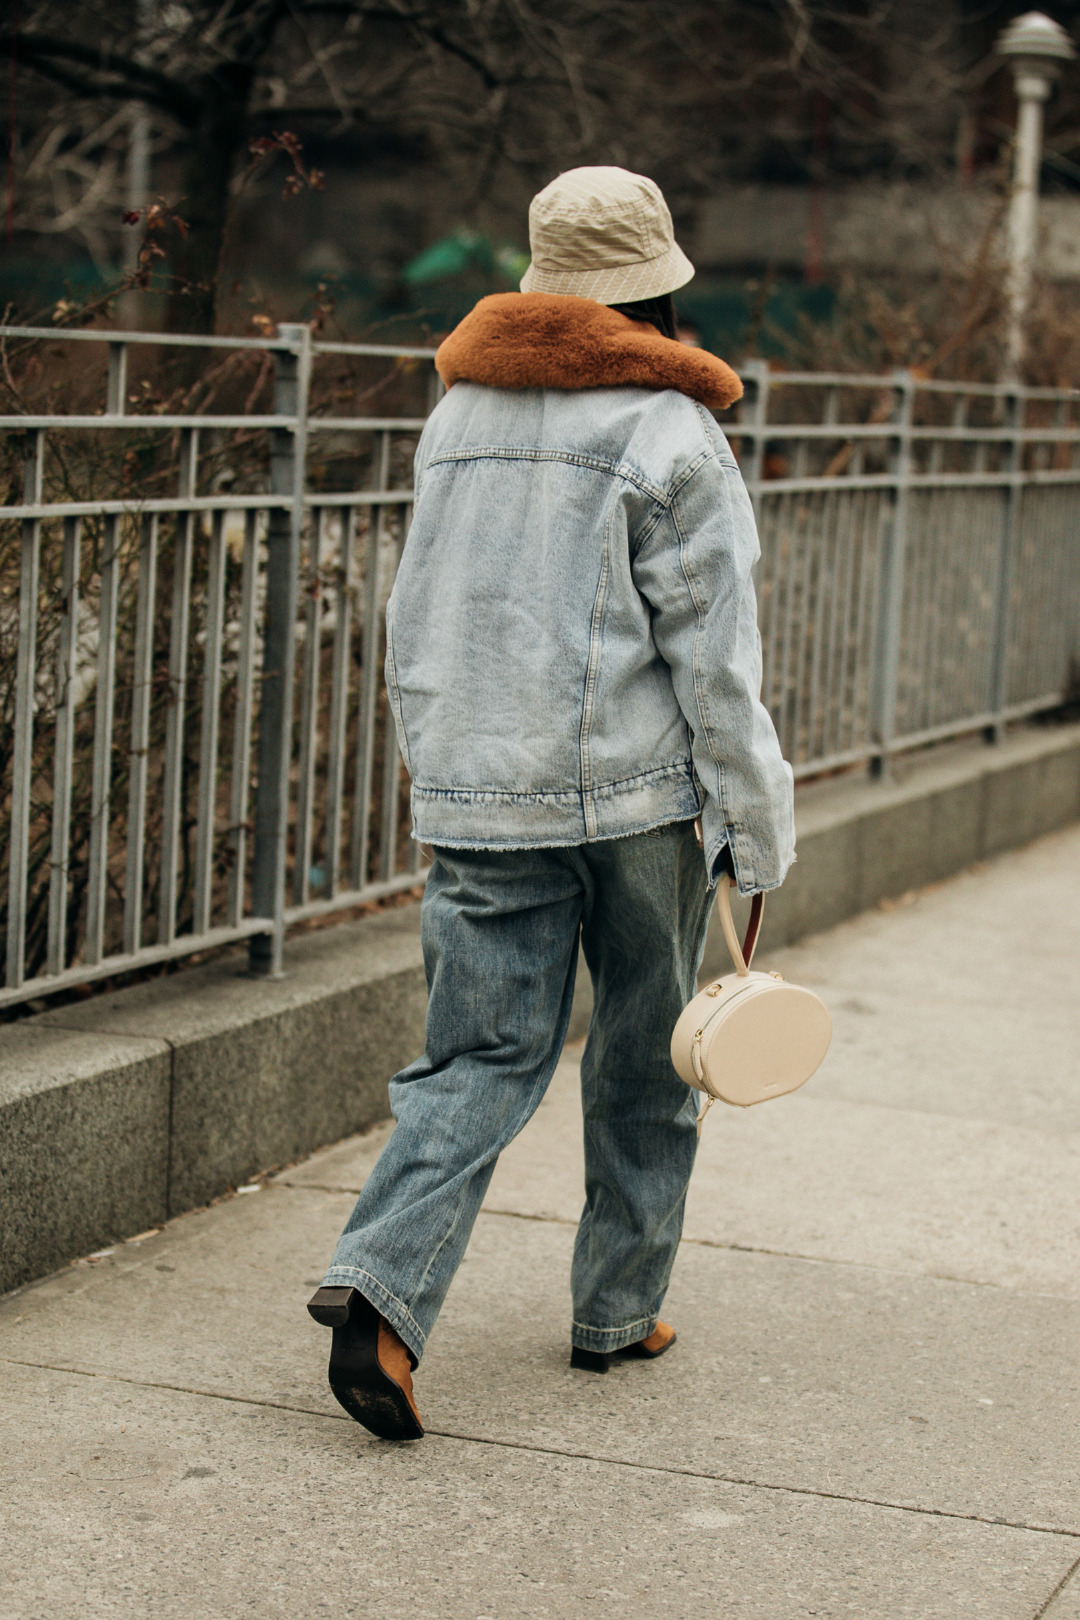 Sokak Stili: 2019-20 Sonbahar/Kış New York Moda Haftası 5. Gün